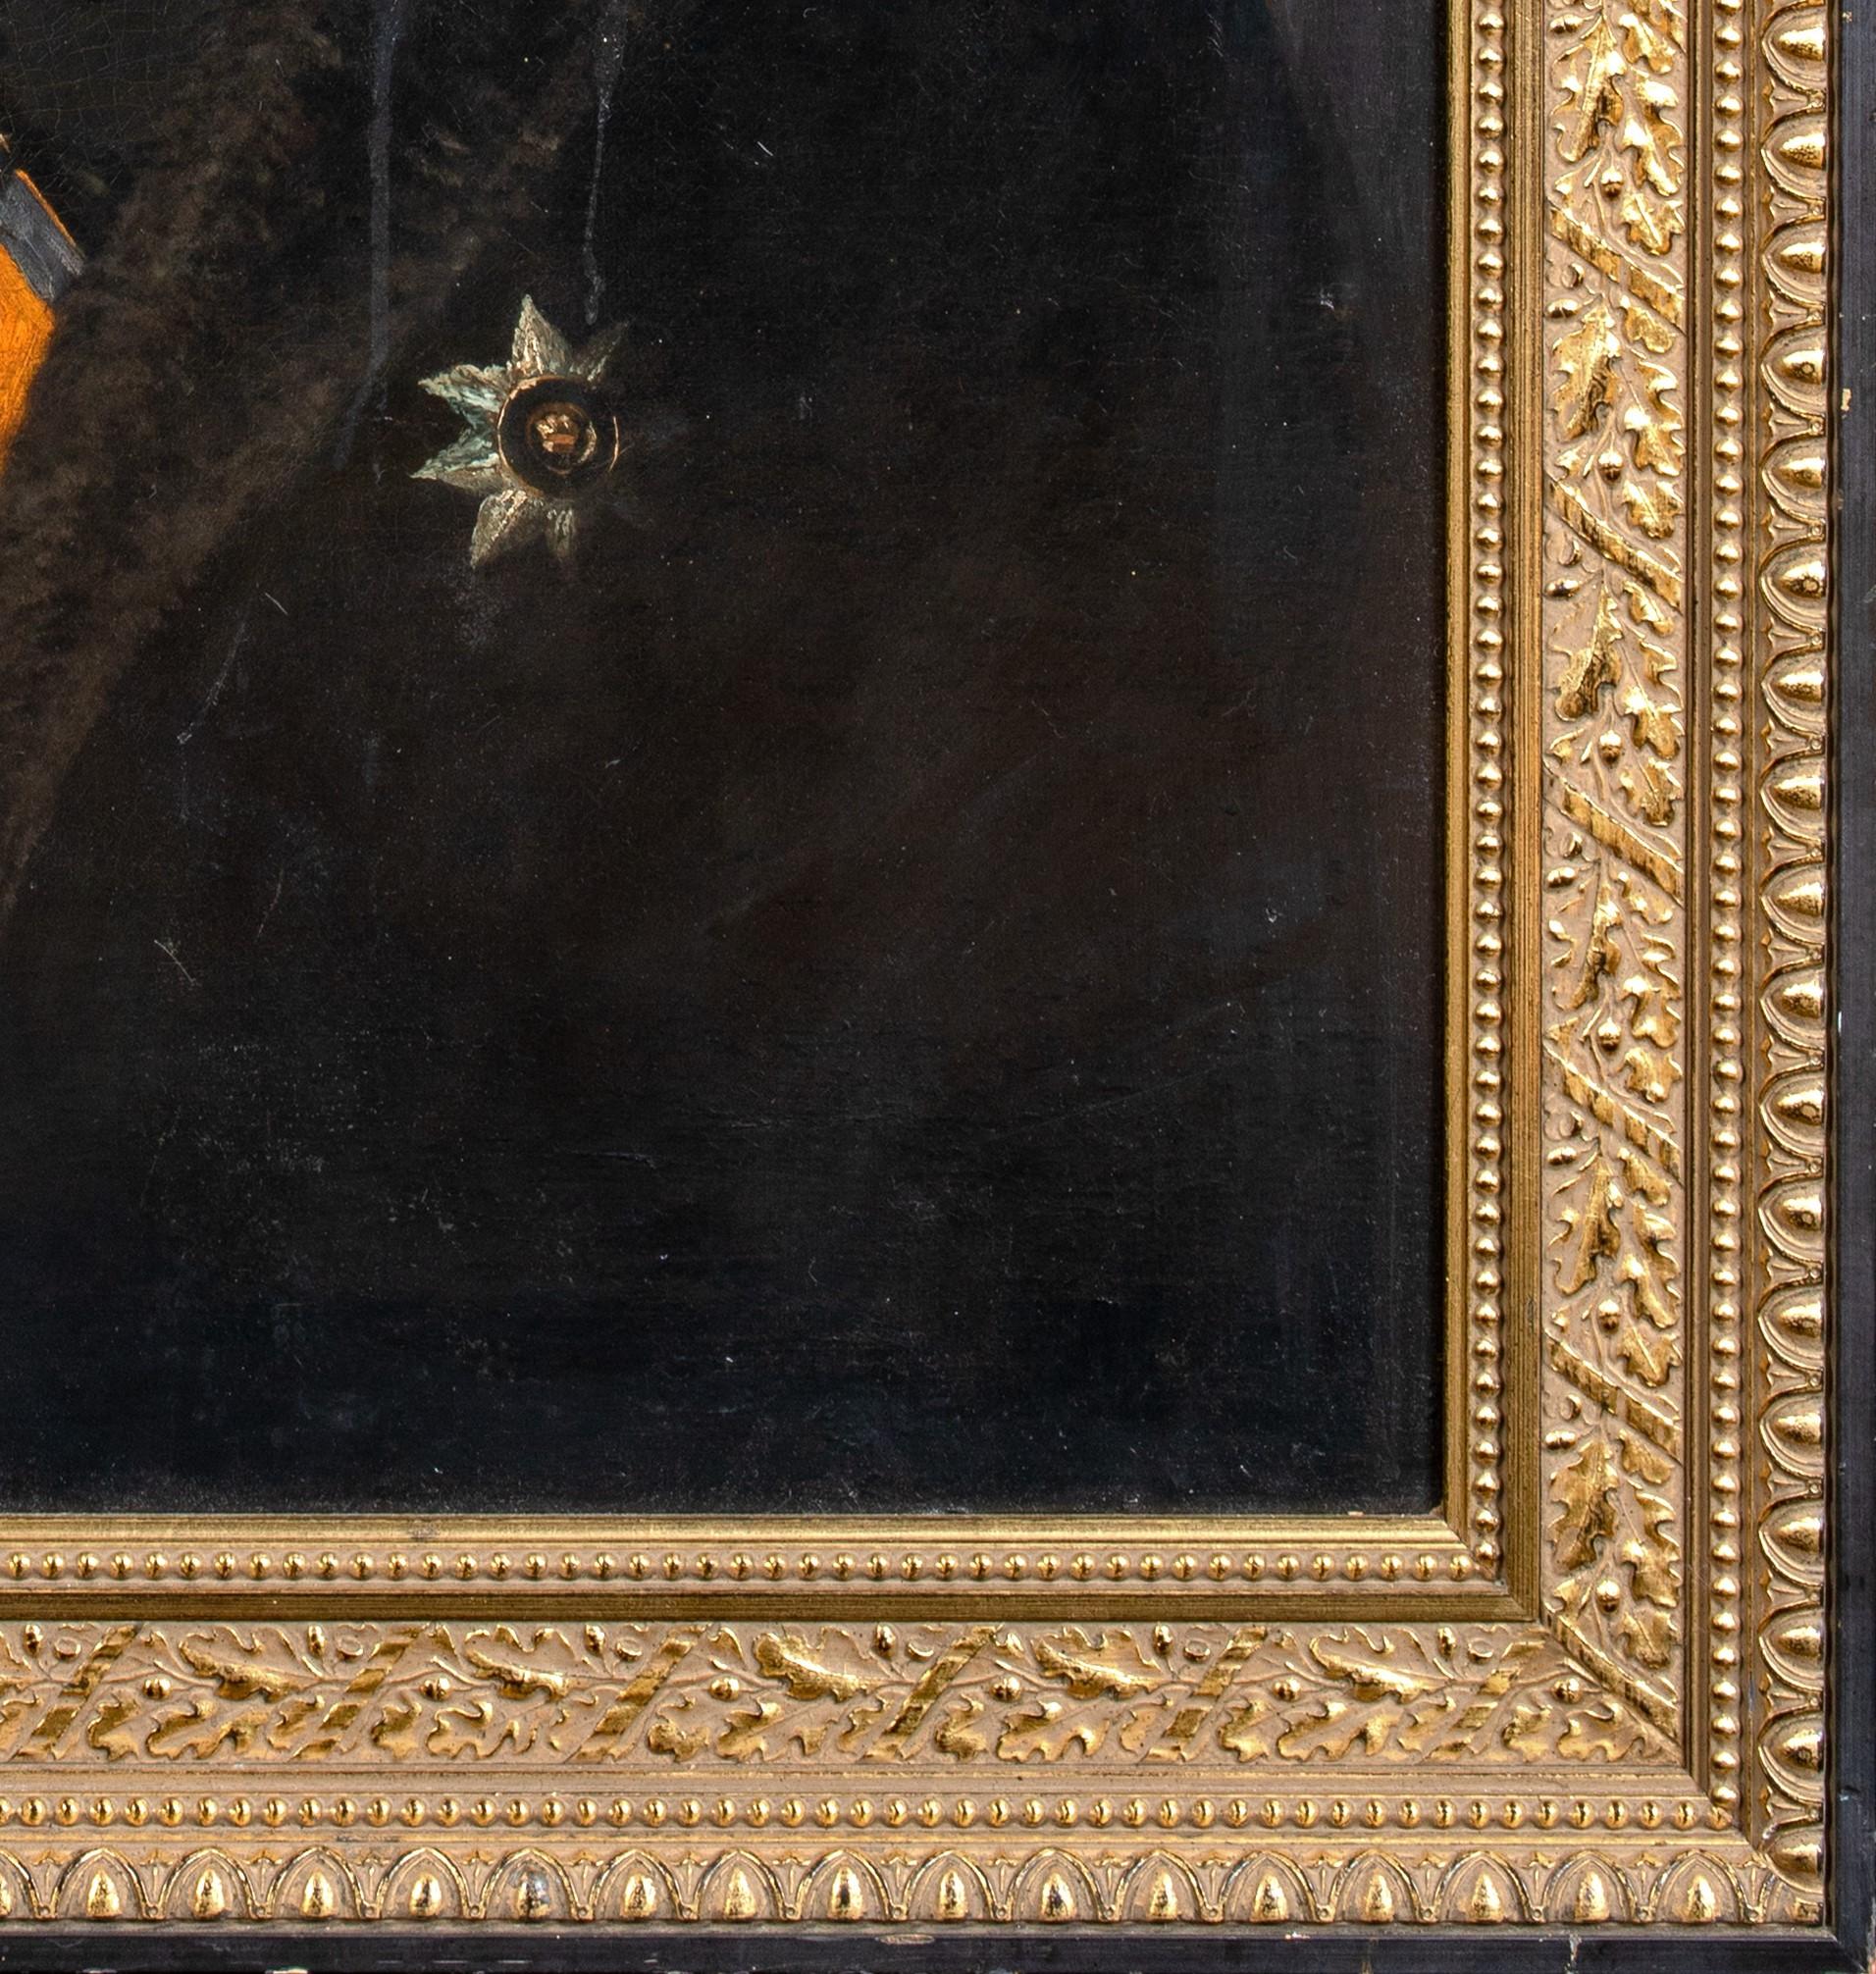 Portrait de Giuseppe Garibaldi (1807-1882), 19ème siècle

Rare portrait original de l'école italienne

Grand portrait de Giuseppe Garibaldi de l'école italienne du XIXe siècle, huile sur toile. Excellente qualité et condition rare portrait précoce